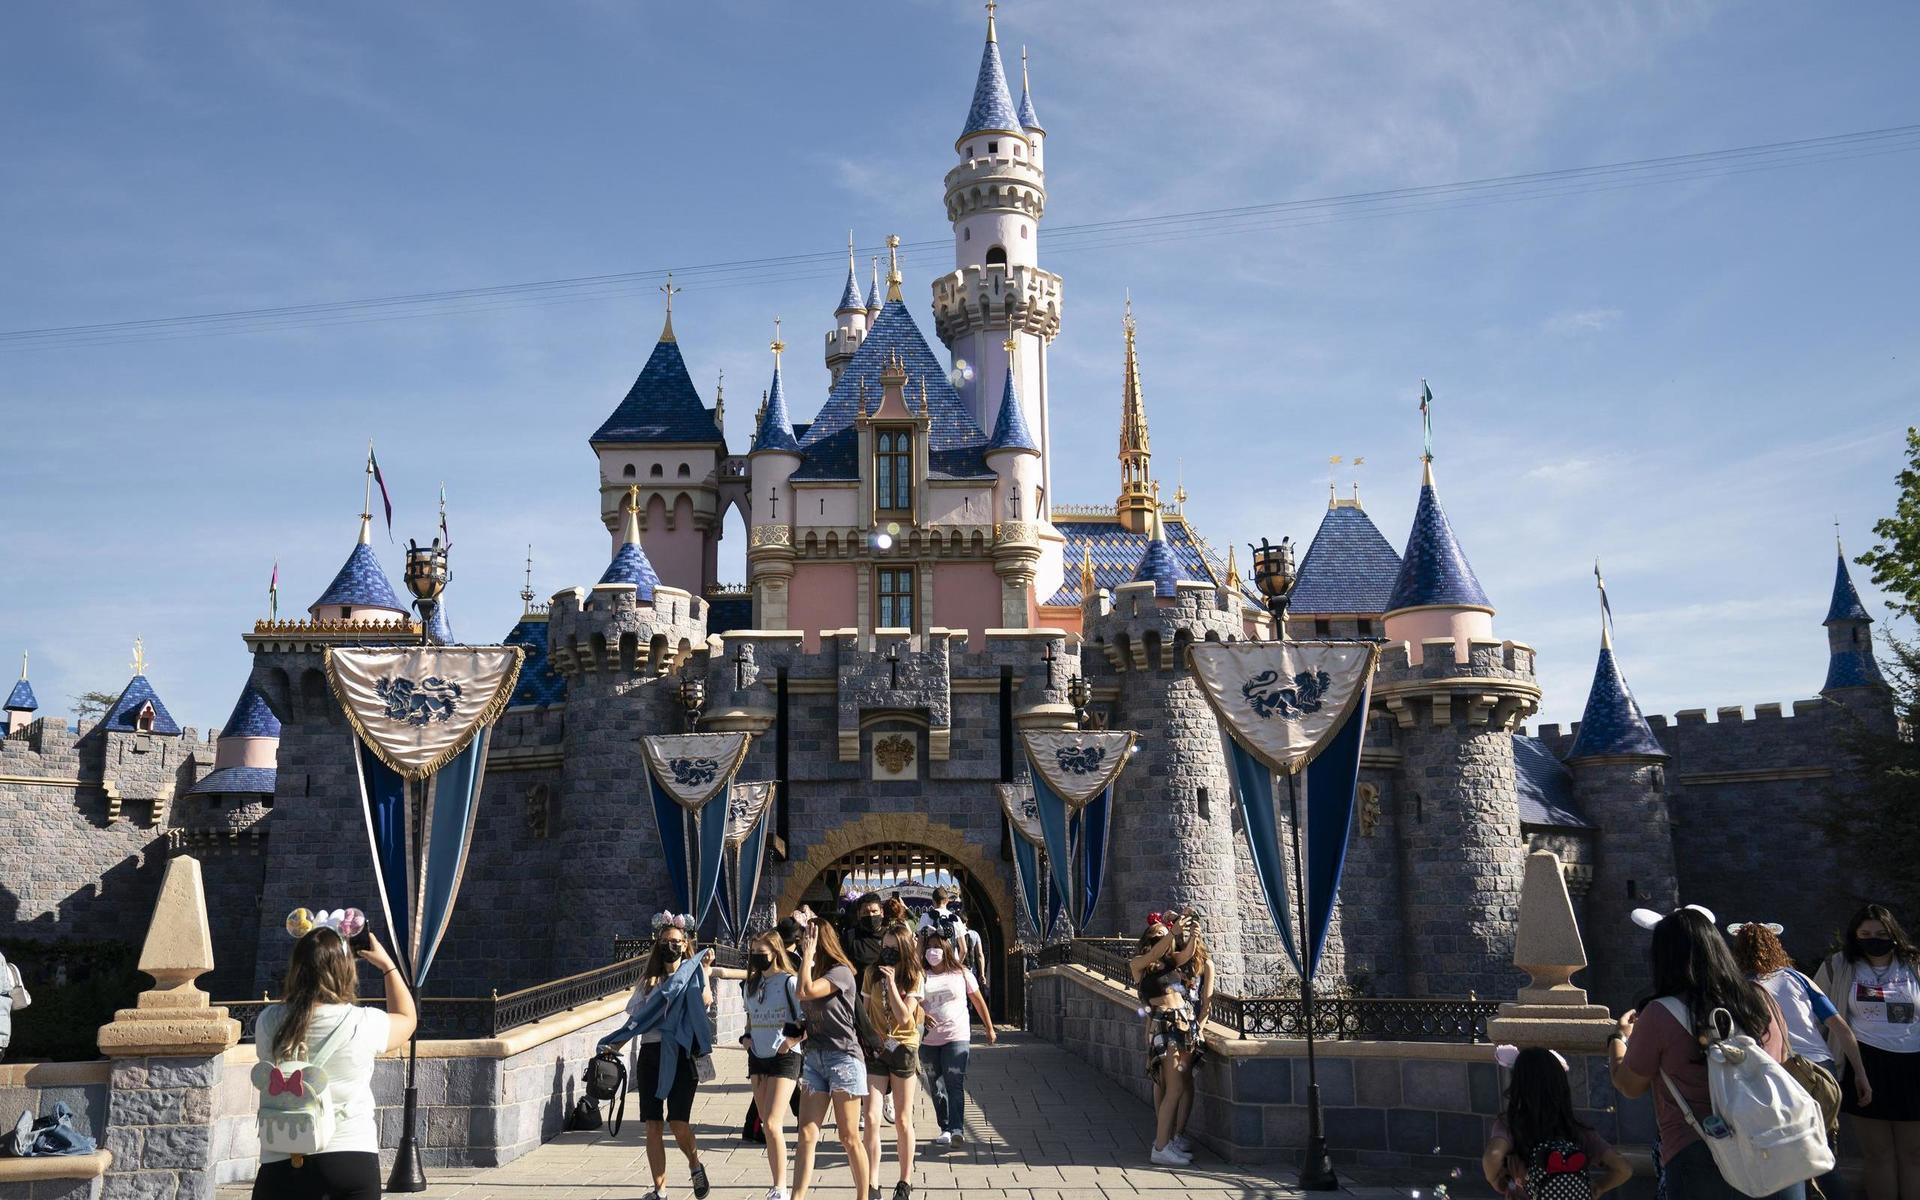 Kalifornien har sedan tidigare lättat på flertalet restriktioner. I april återöppnade Disneyland för besökare.